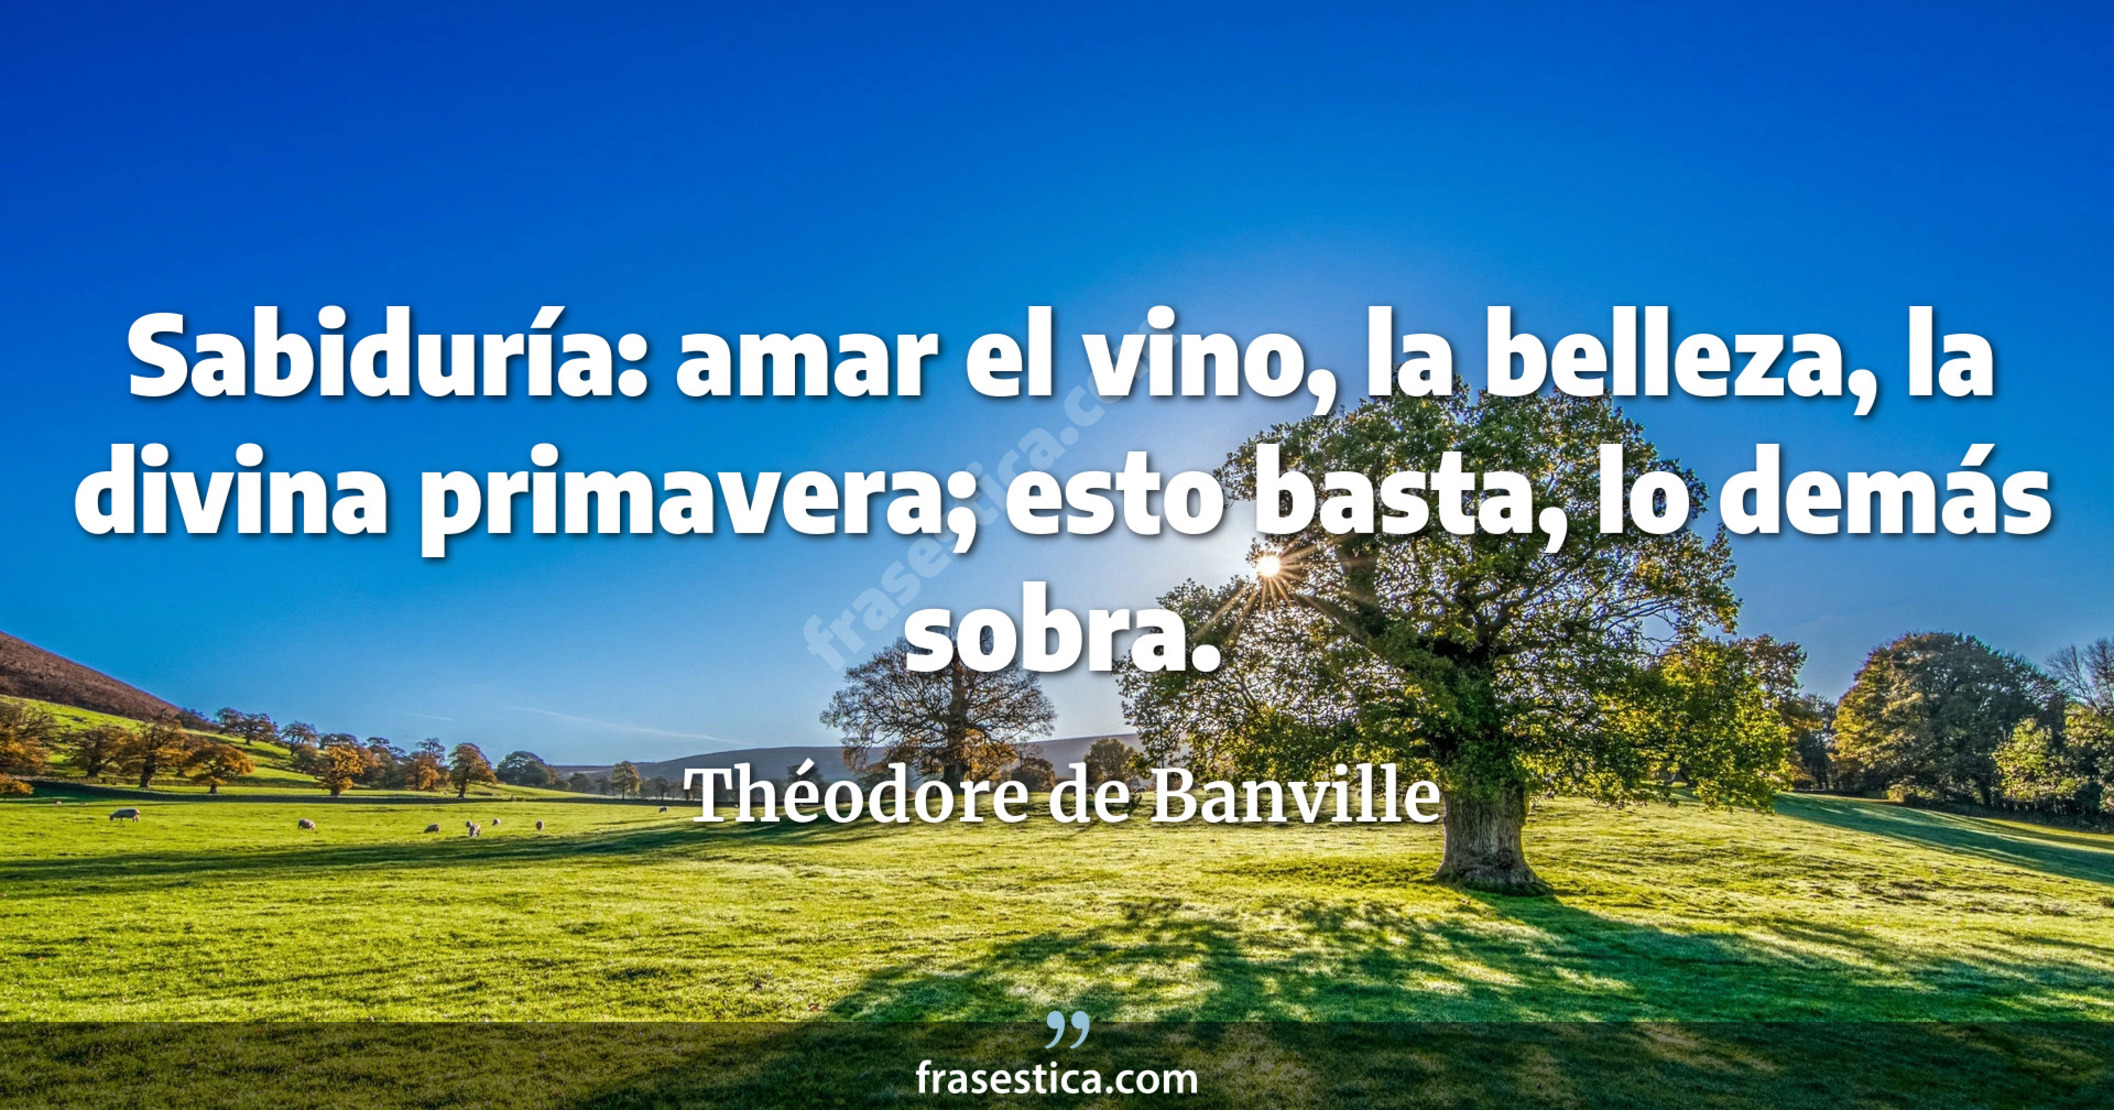 Sabiduría: amar el vino, la belleza, la divina primavera; esto basta, lo demás sobra. - Théodore de Banville